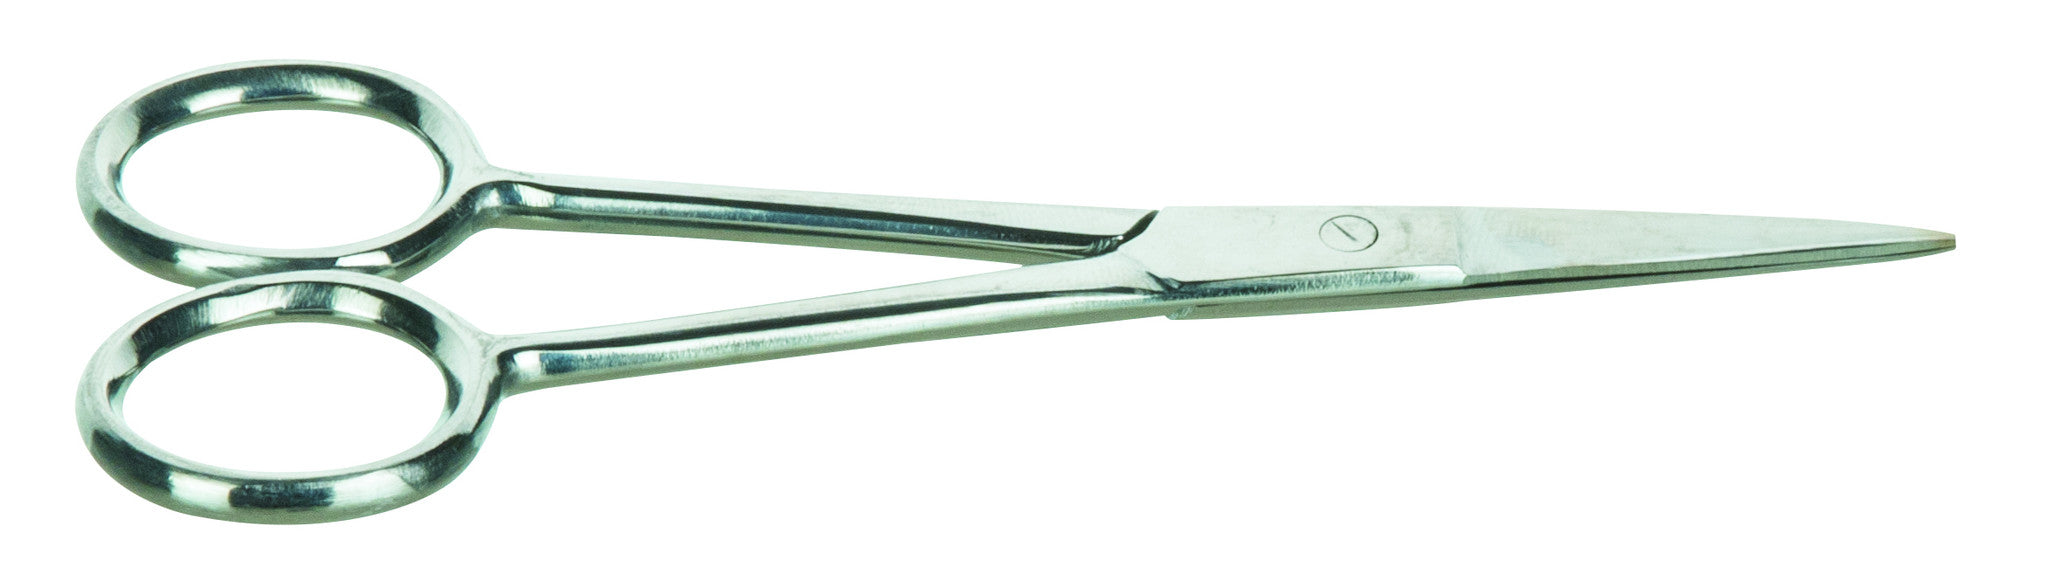 Dissecting Scissor 130mm, S.Steel